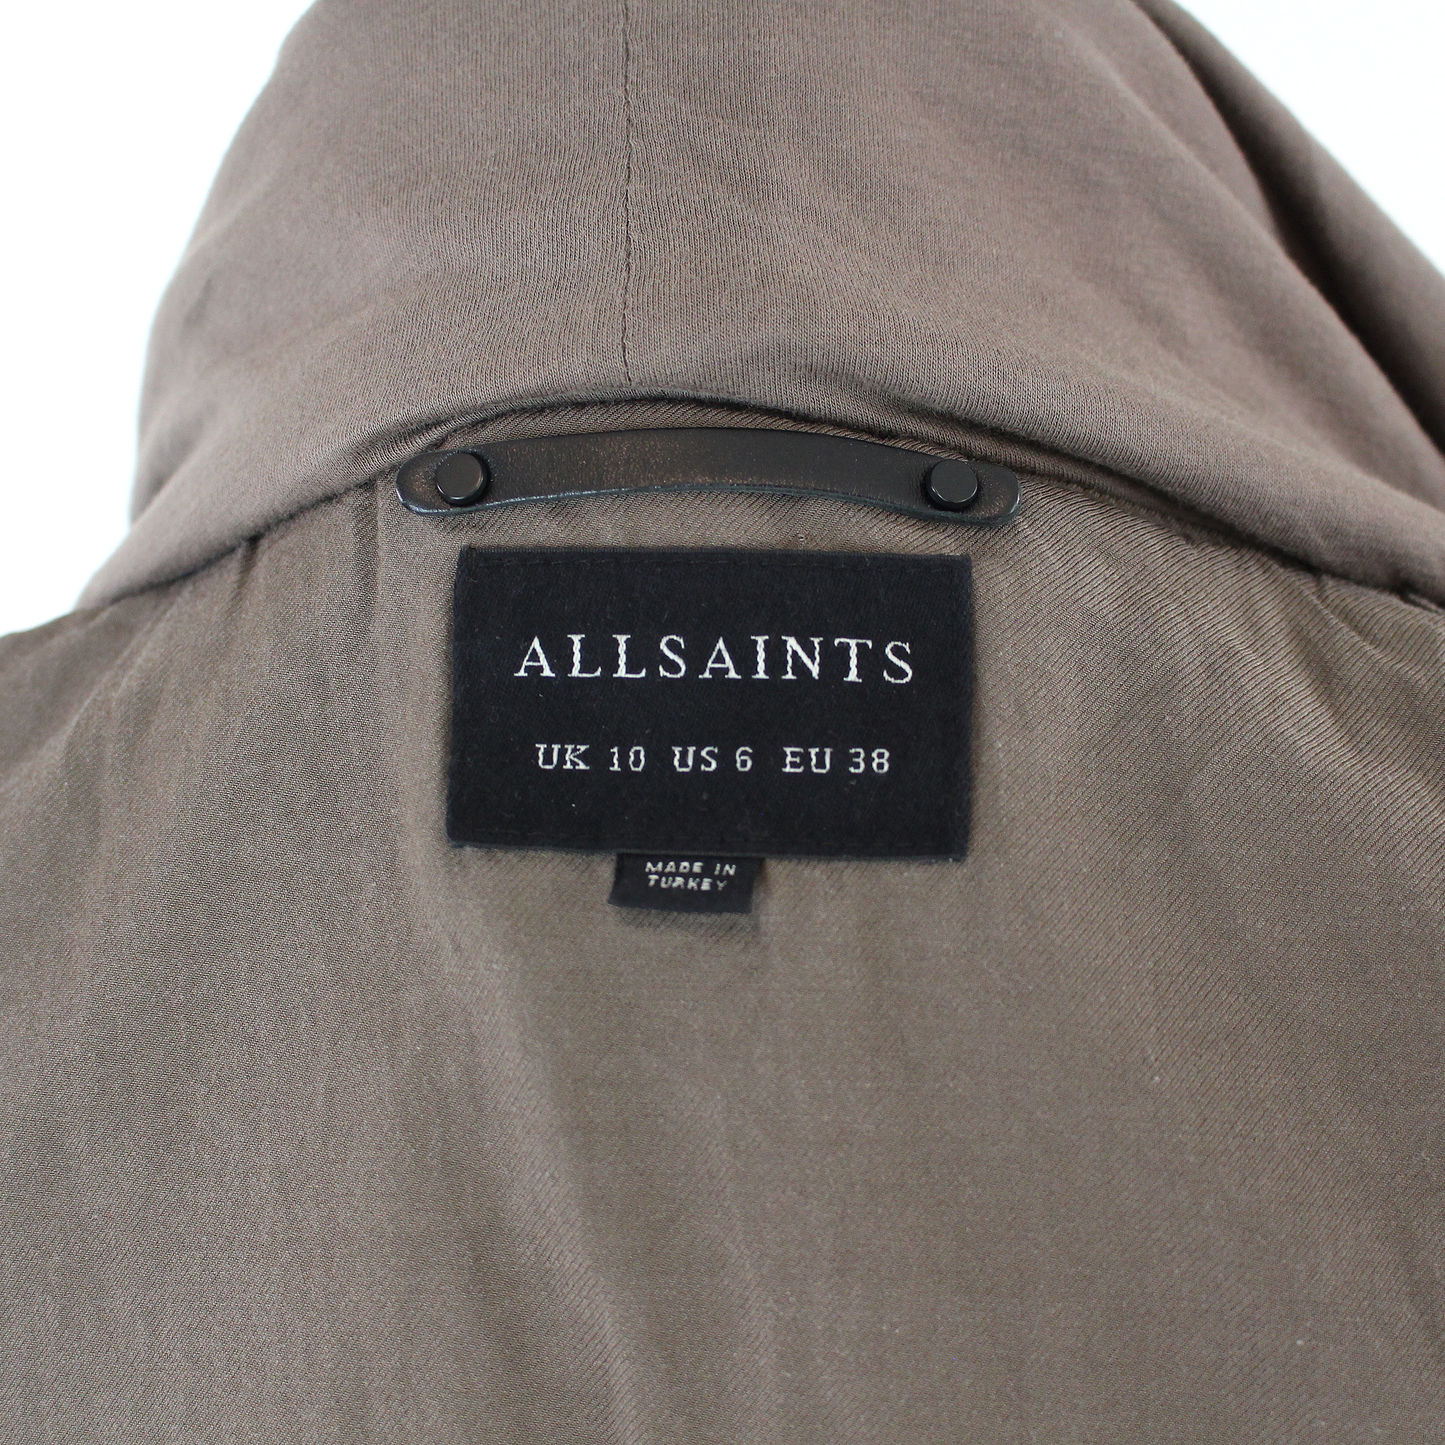 All Saints Arton Jacket